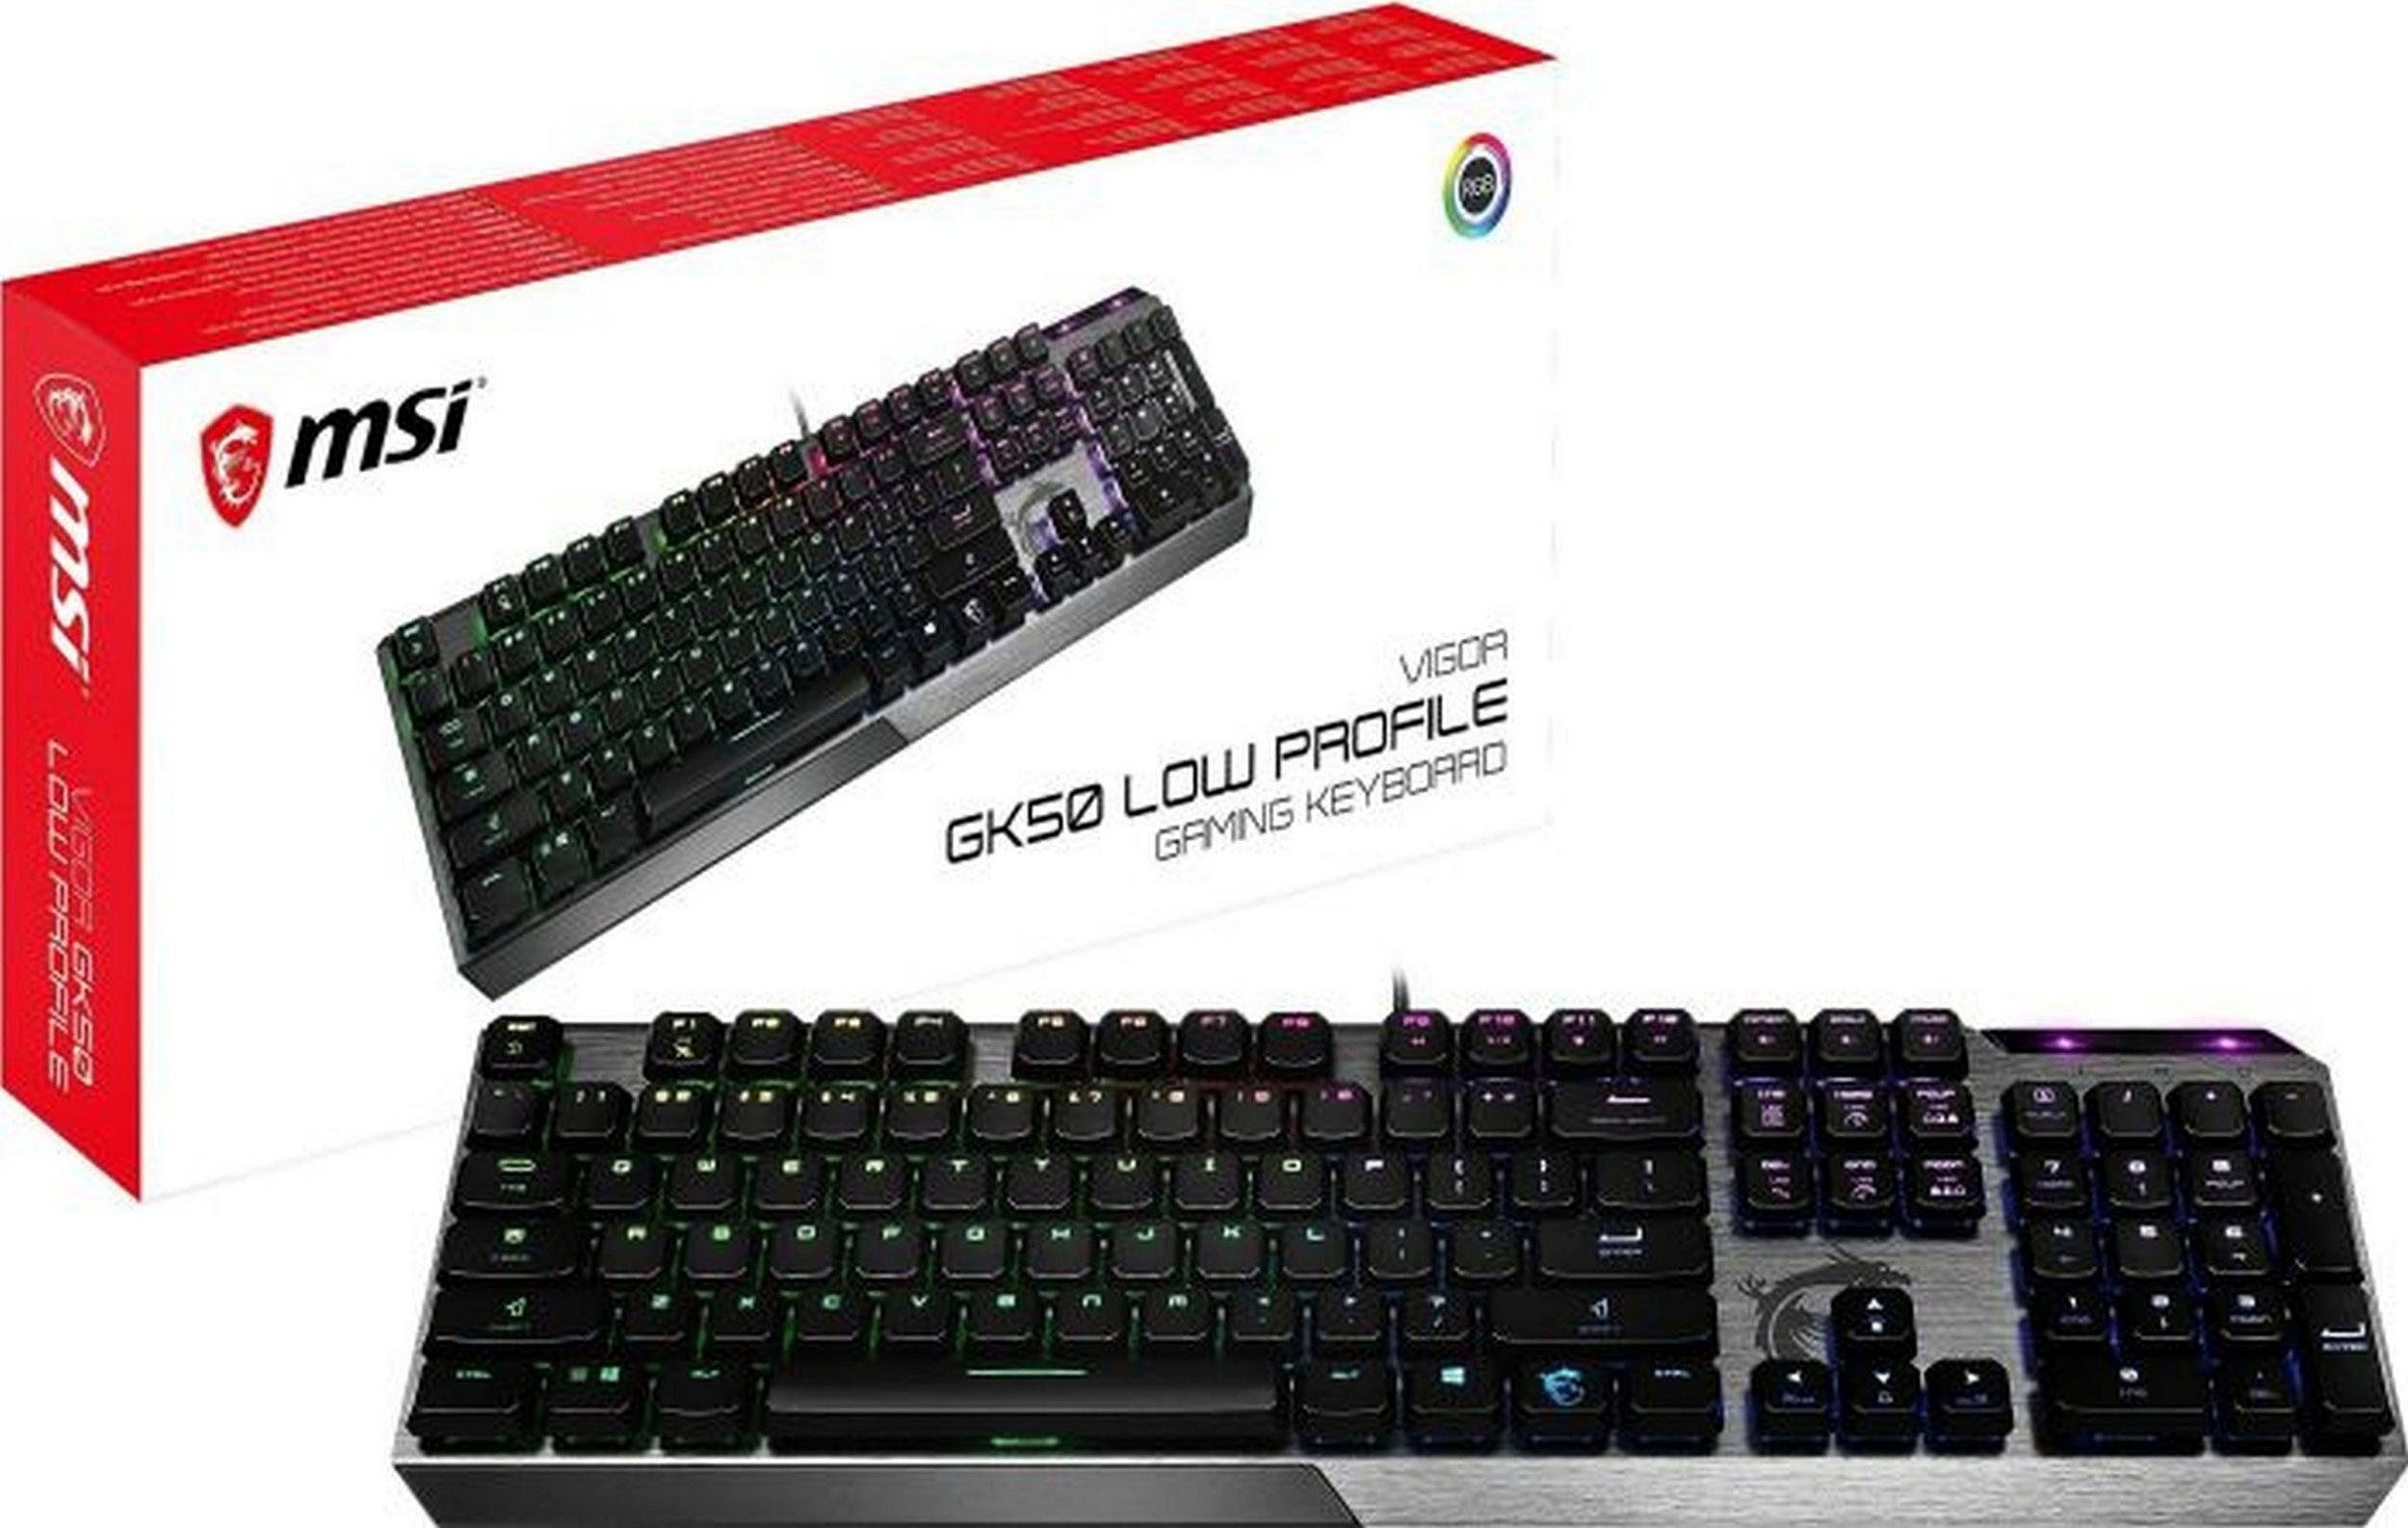 MSI VIGOR PROFILE Gaming-Tastatur GK50 LOW